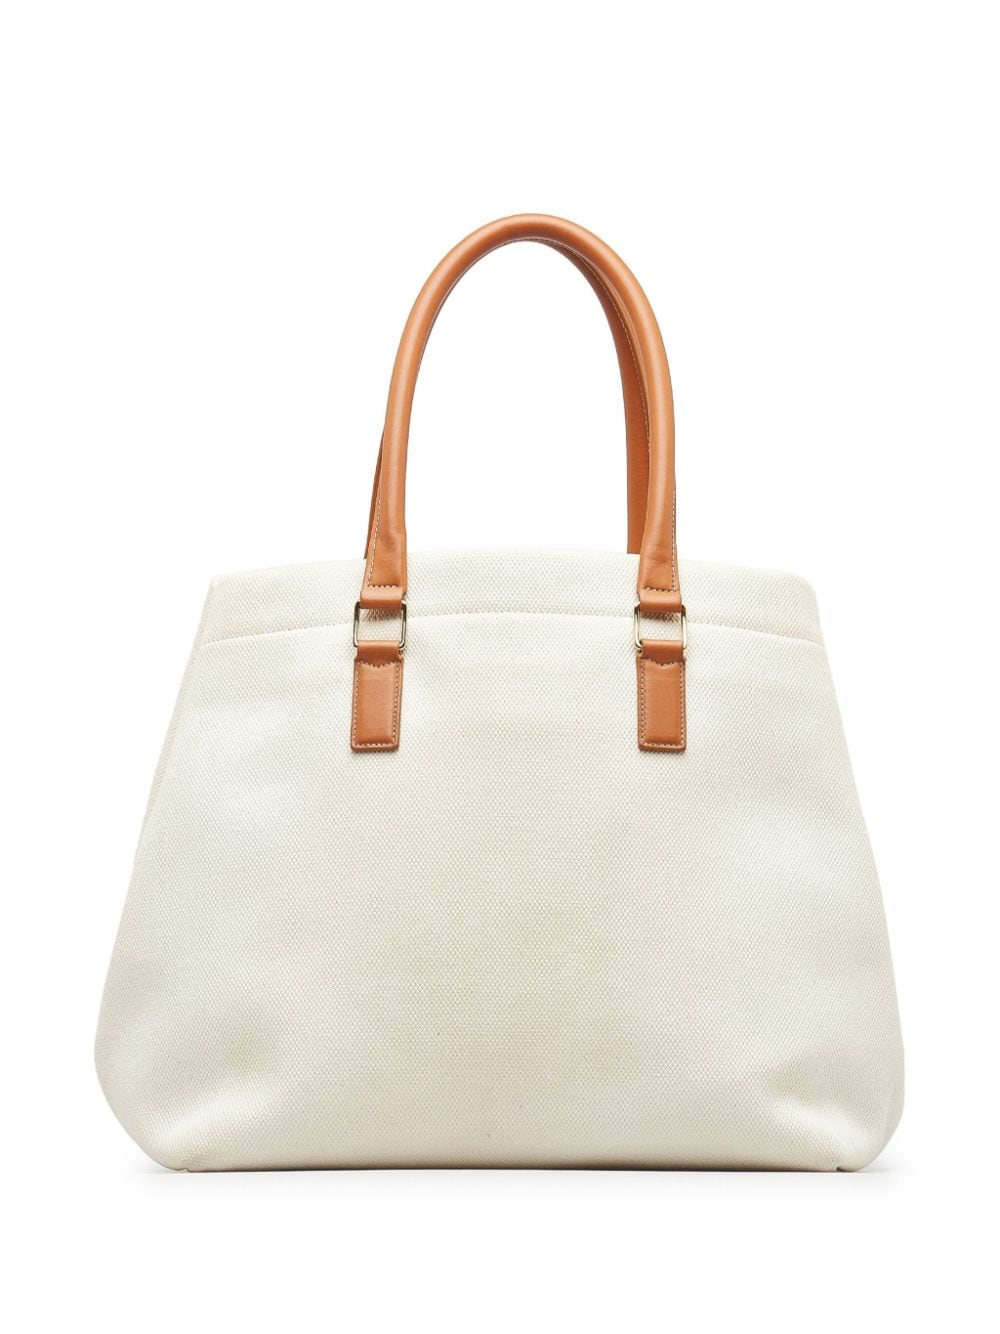 Céline Pre-Owned Horizontal Cabas Handbag - Farfetch